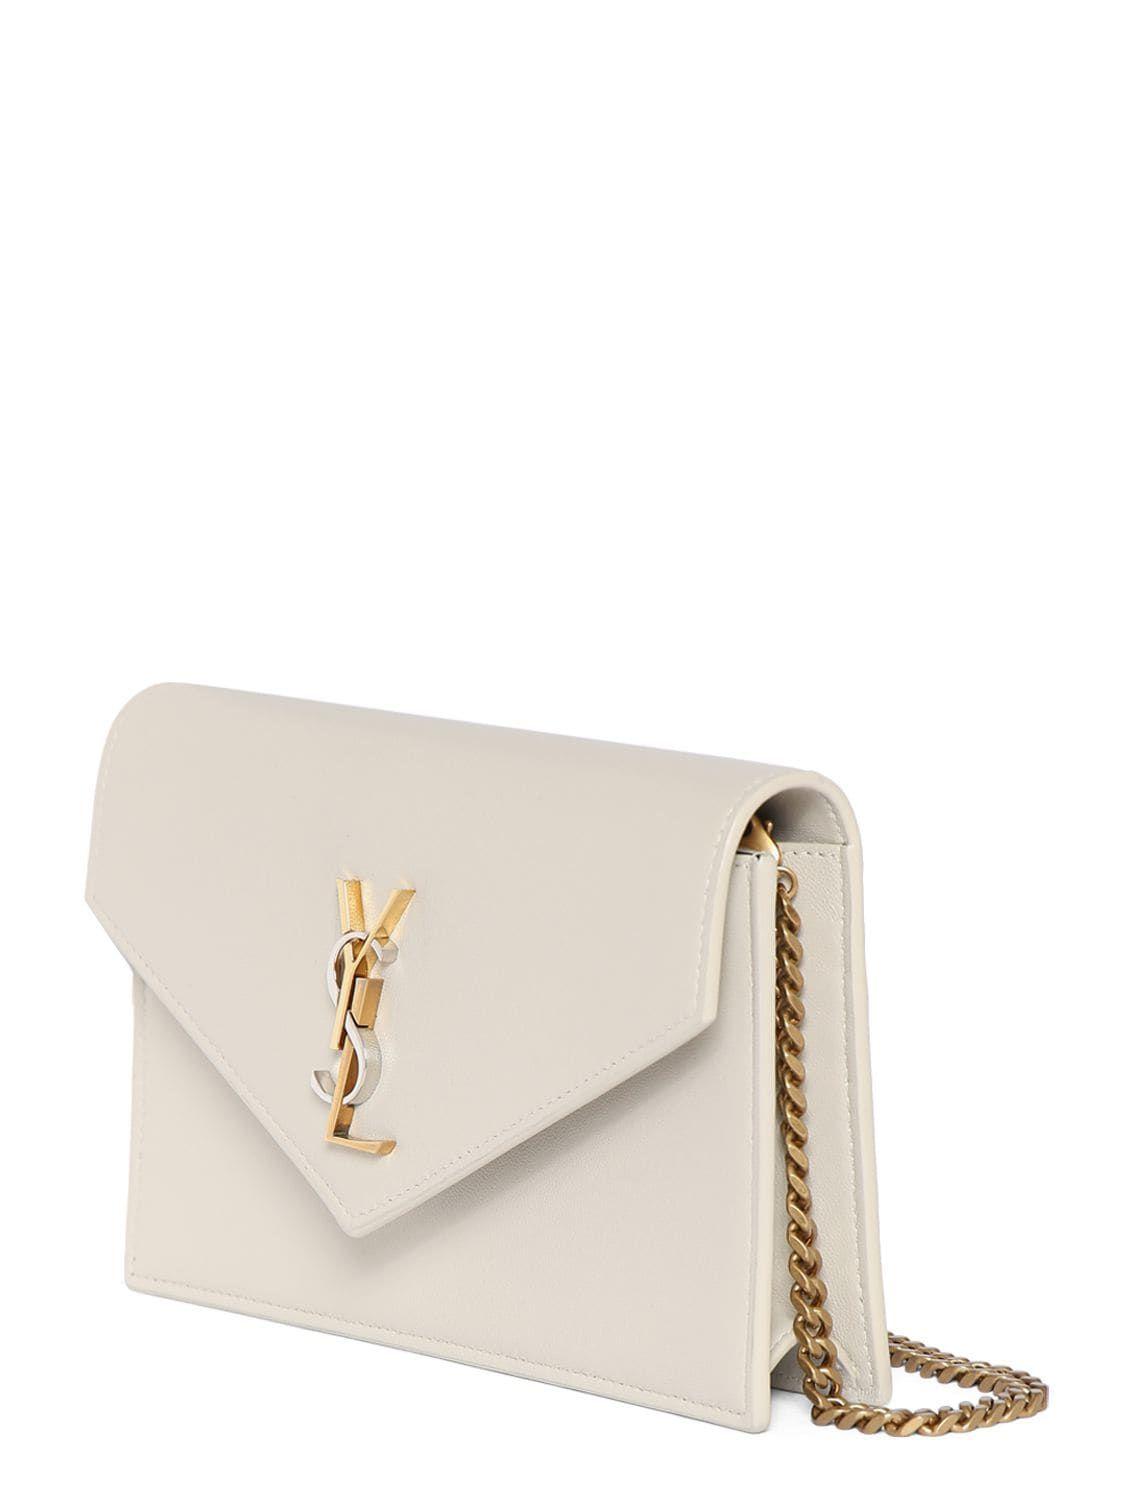 Saint Laurent Classic Monogram Envelope Wallet Chain Bag